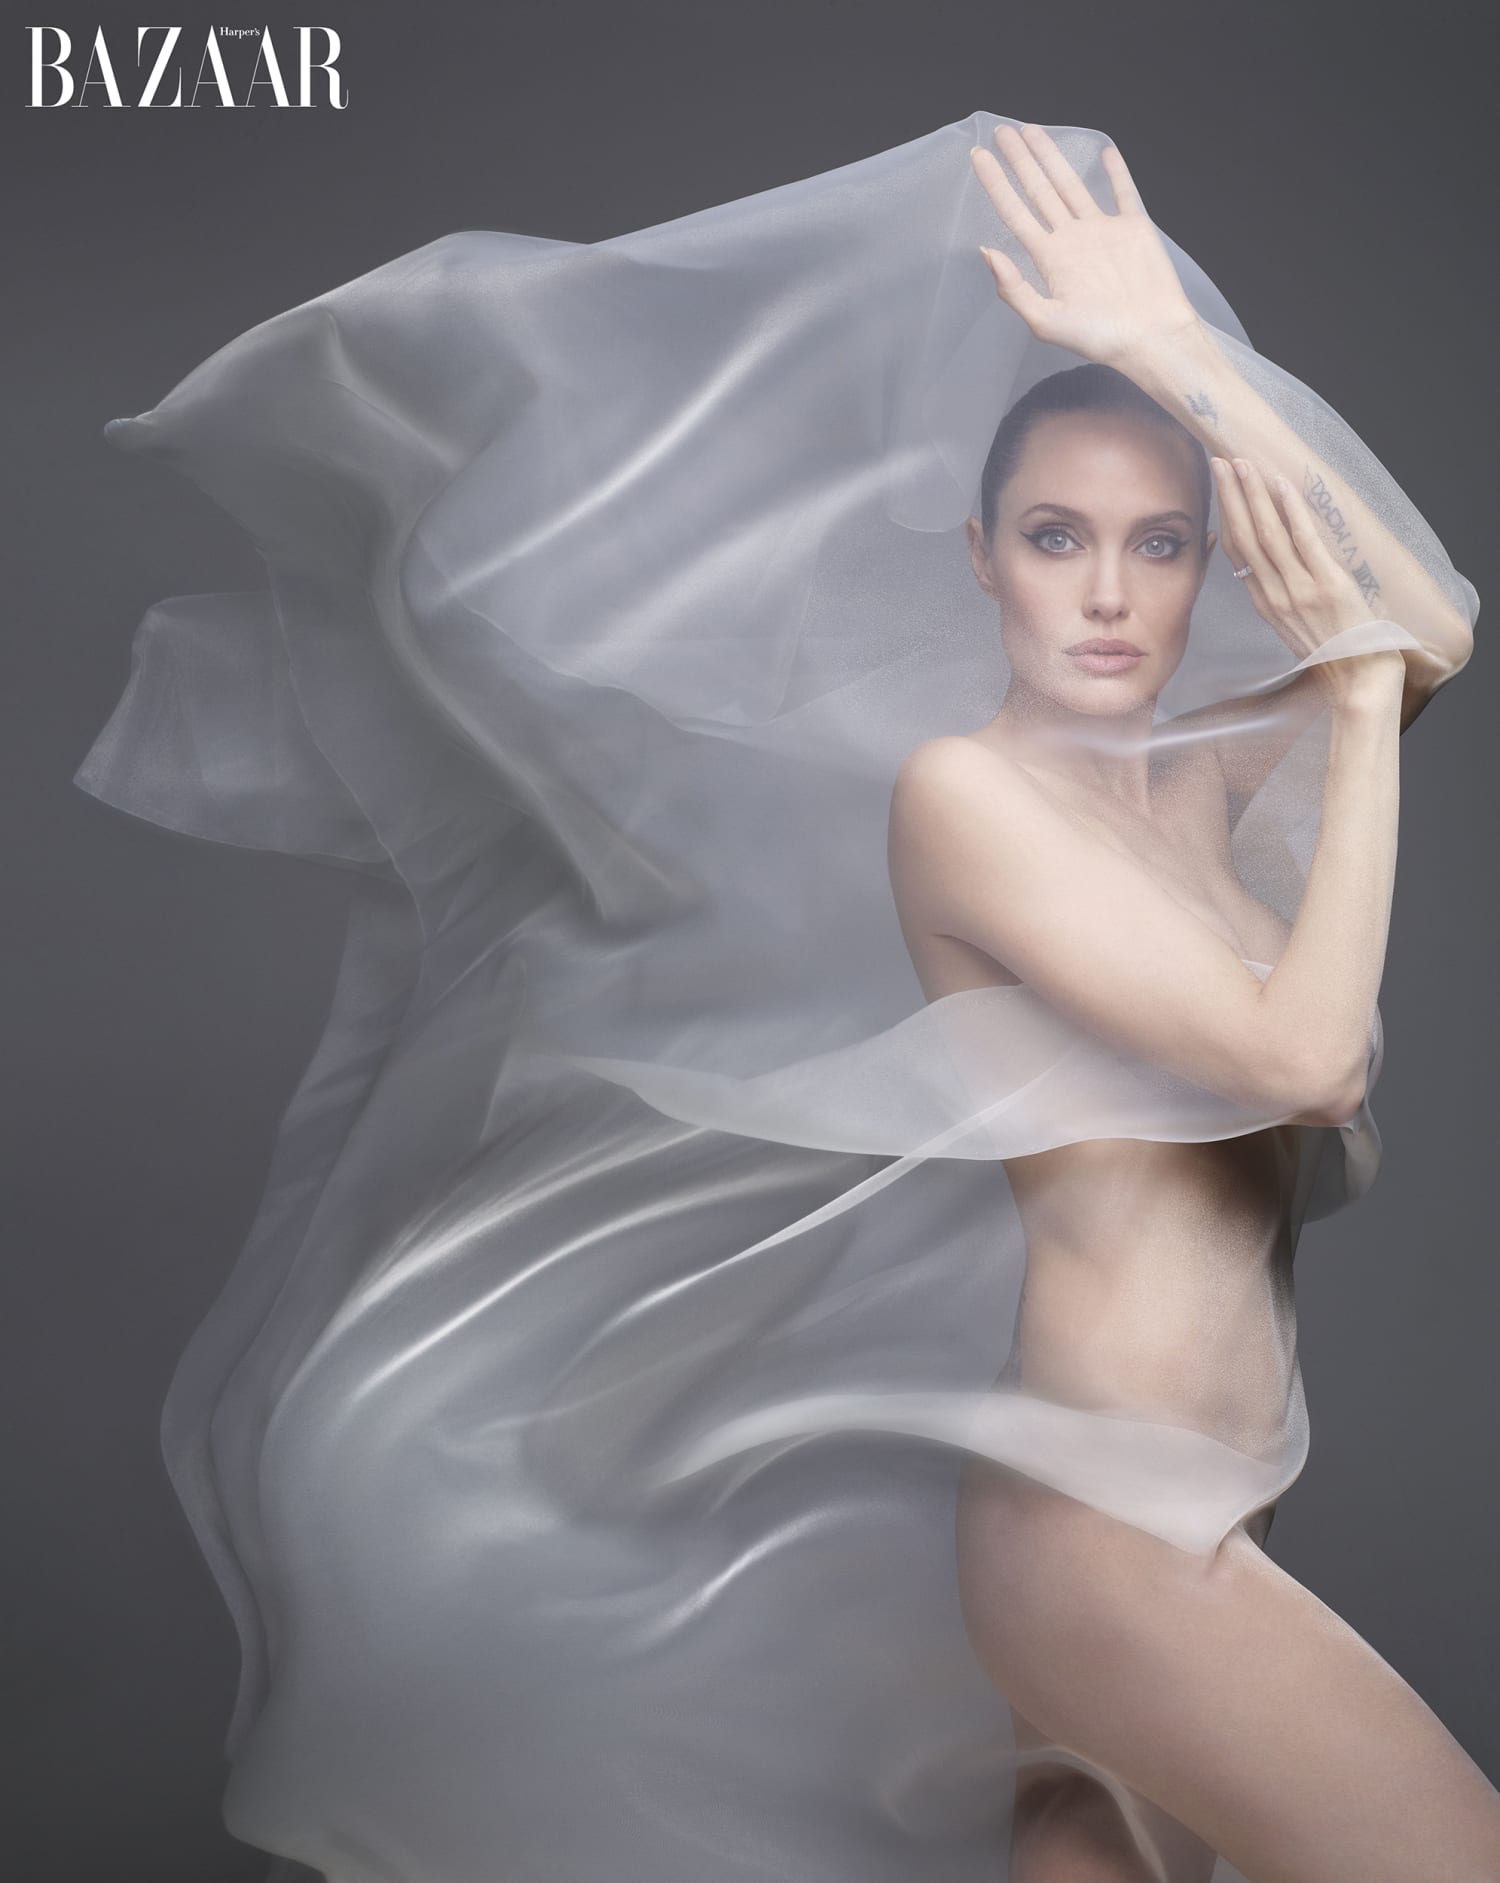 Angelina Jolie Tits - Angelina Jolie embraces 'true self' in Harper's Bazaar photo shoot